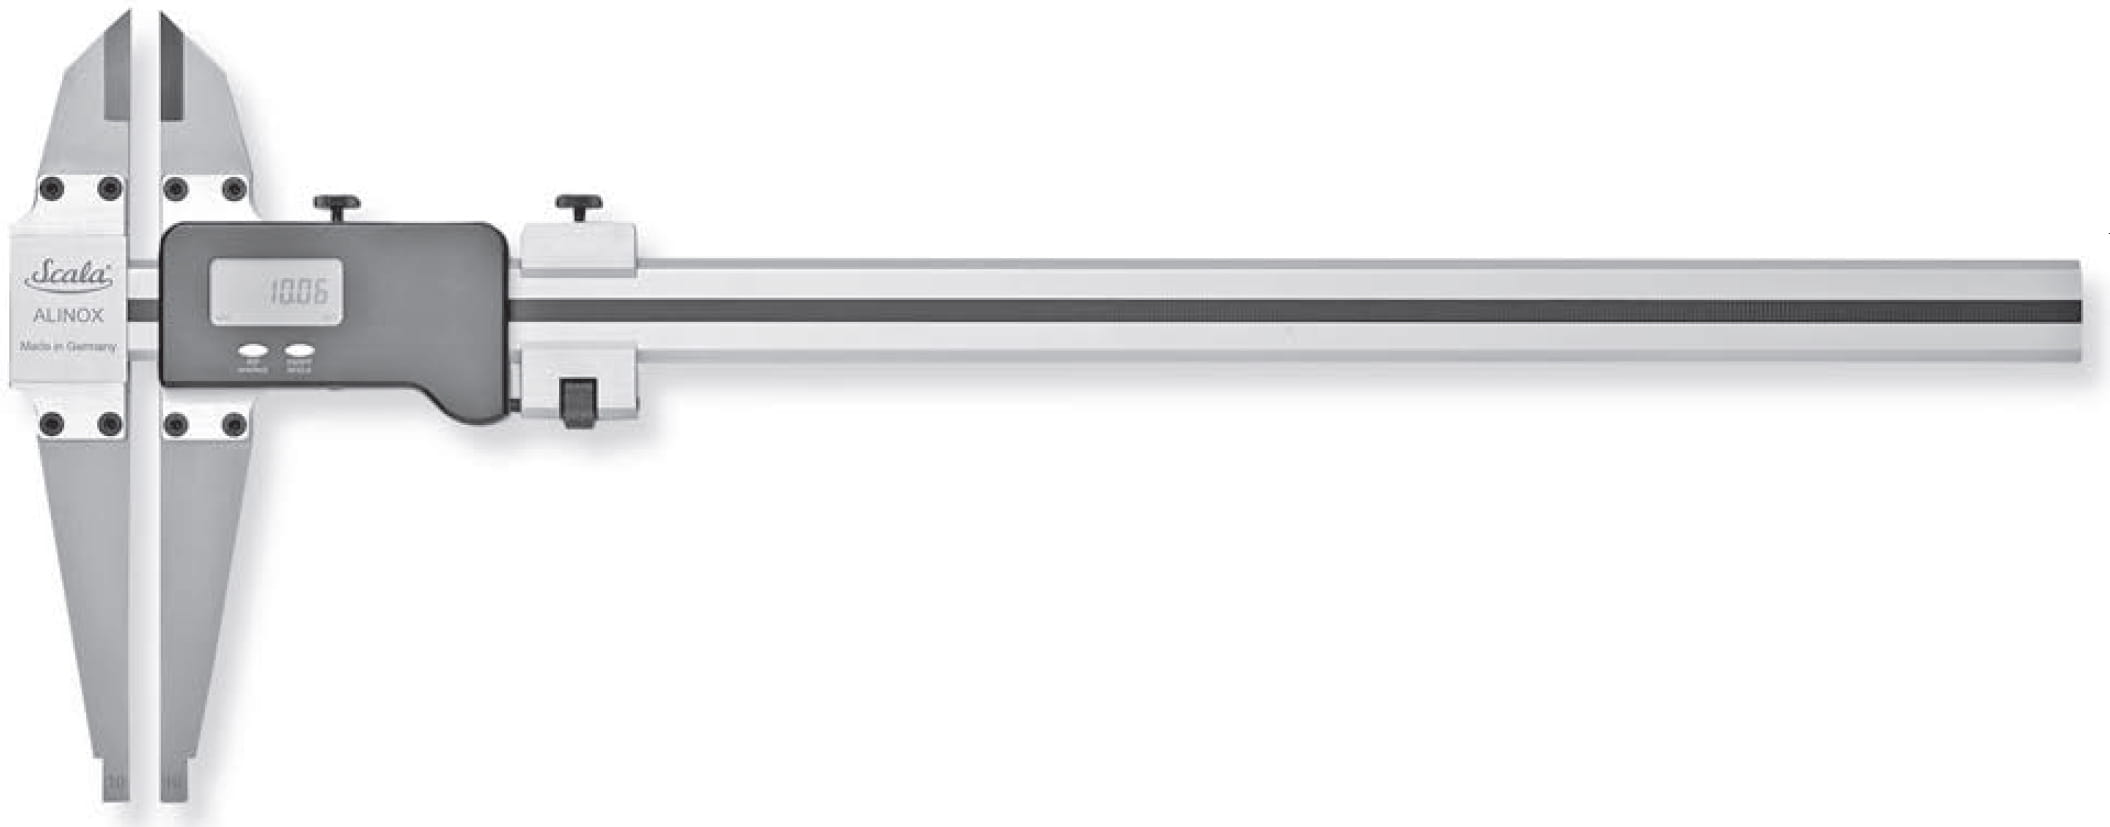 Alinox Digital-Präzisions-Werkstattmessschieber mit Messerspitzen